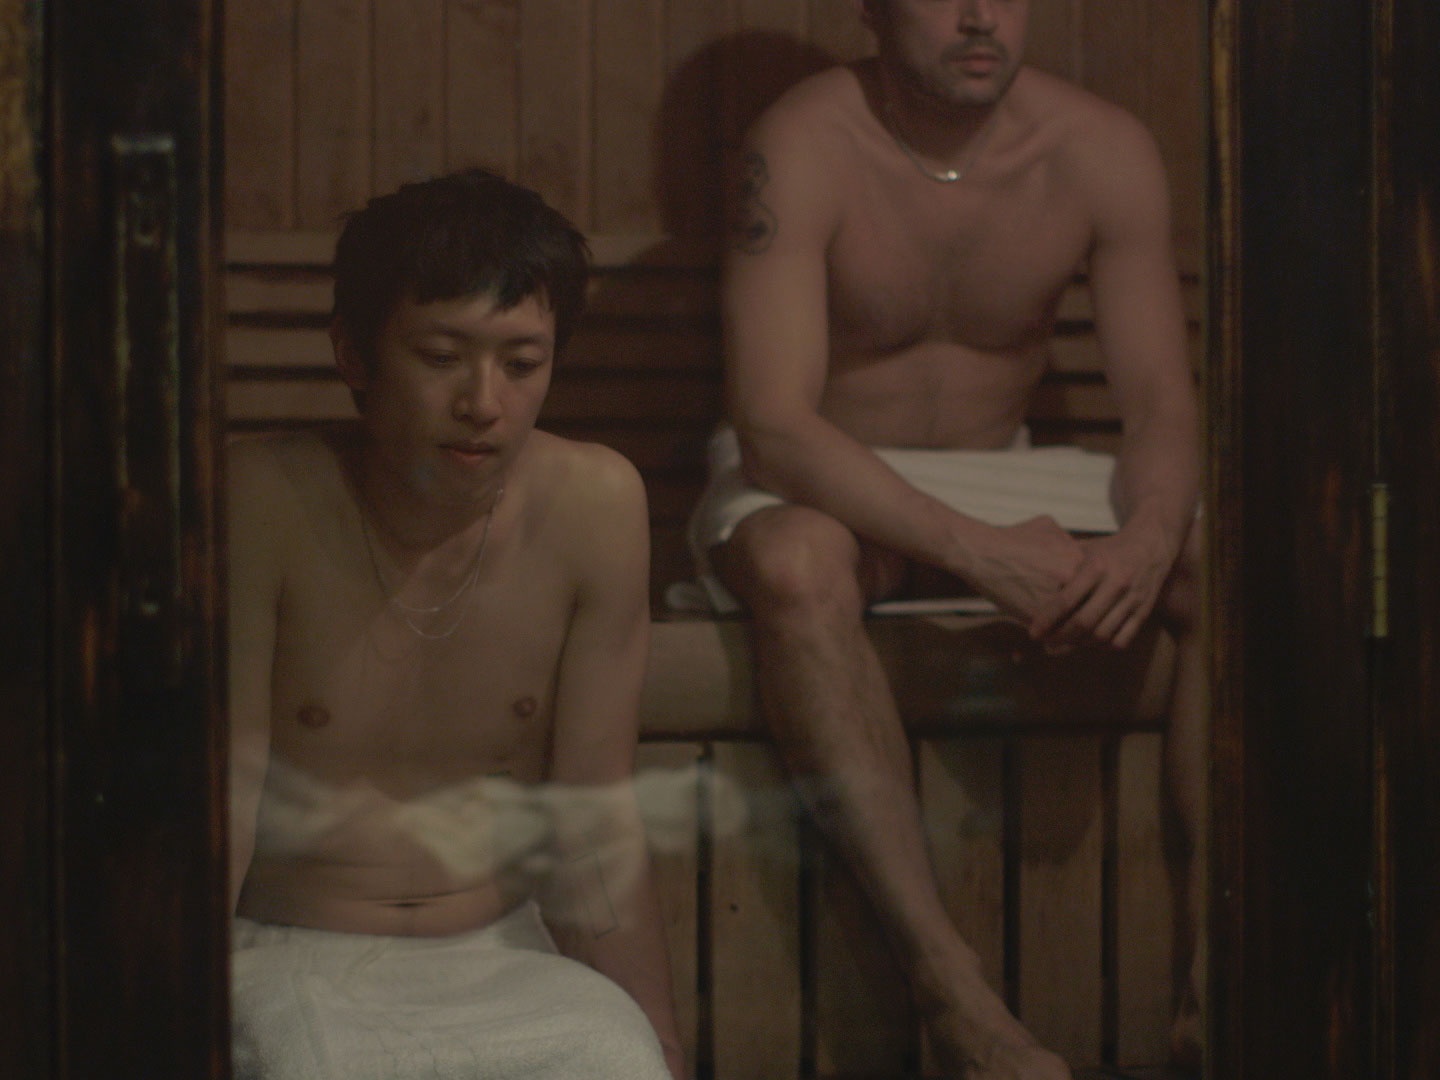 Two men in towels in a sauna.